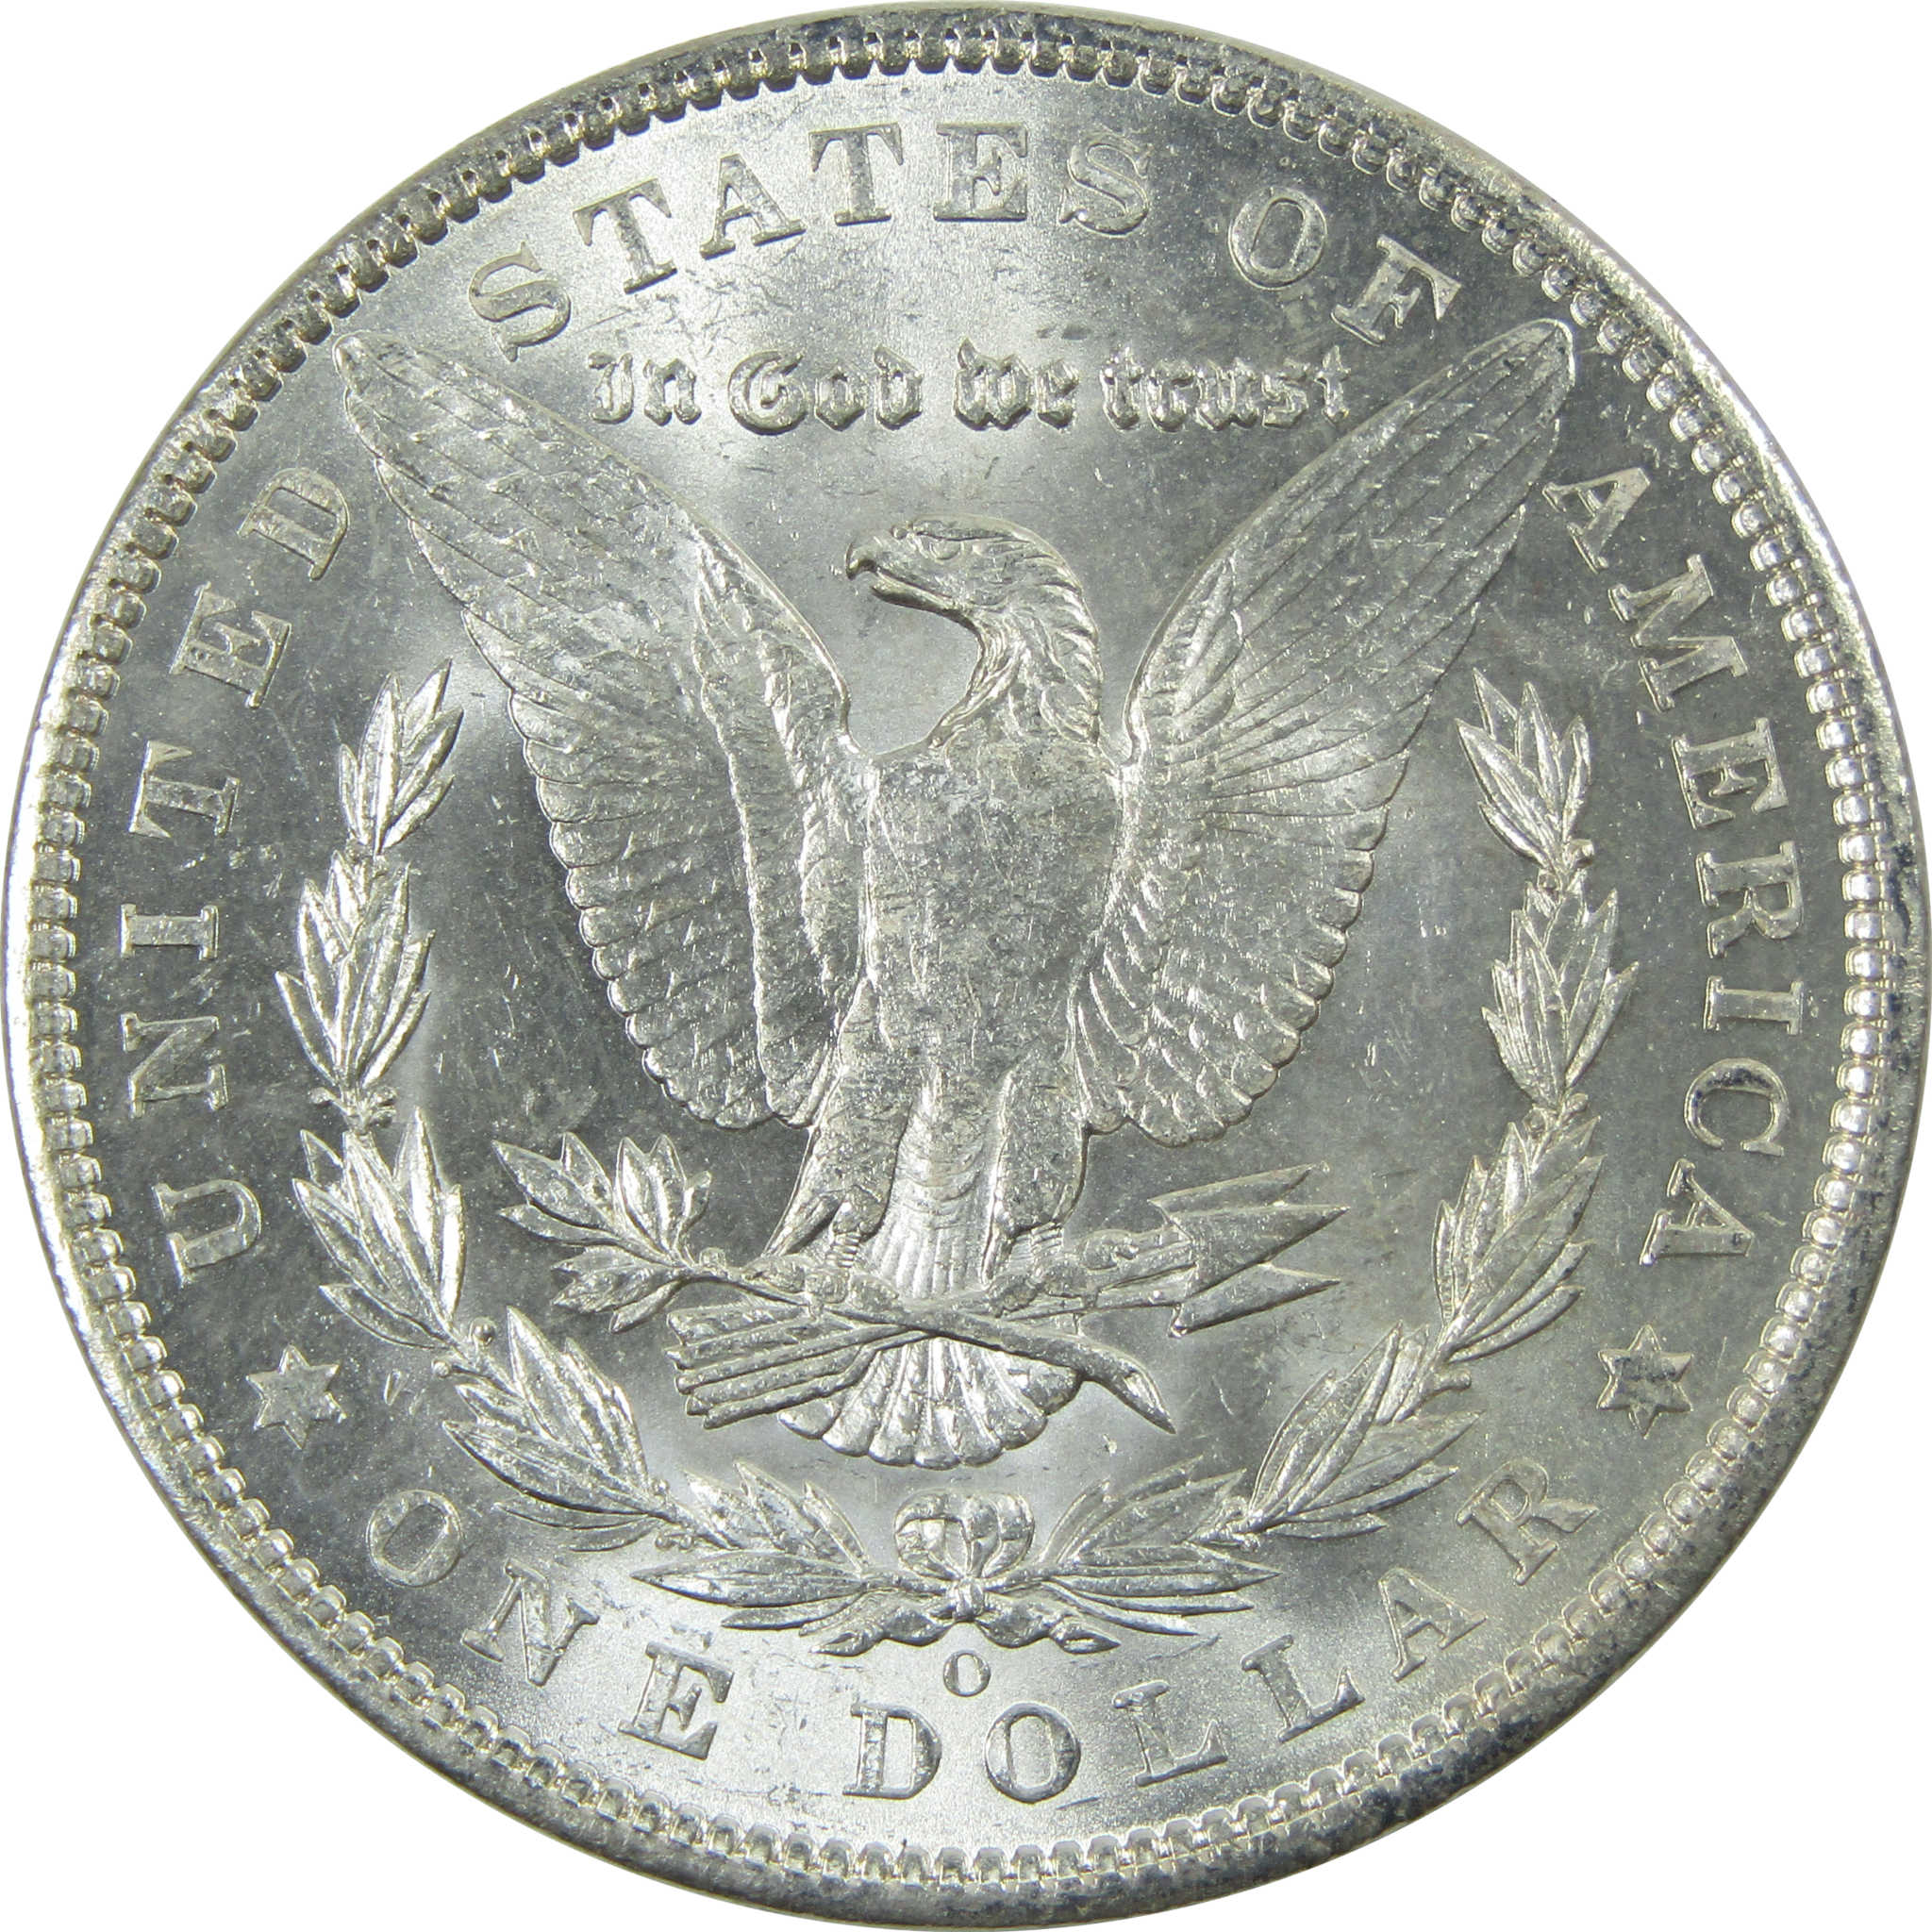 1904 O Morgan Dollar Uncirculated Silver $1 Coin SKU:I13741 - Morgan coin - Morgan silver dollar - Morgan silver dollar for sale - Profile Coins &amp; Collectibles